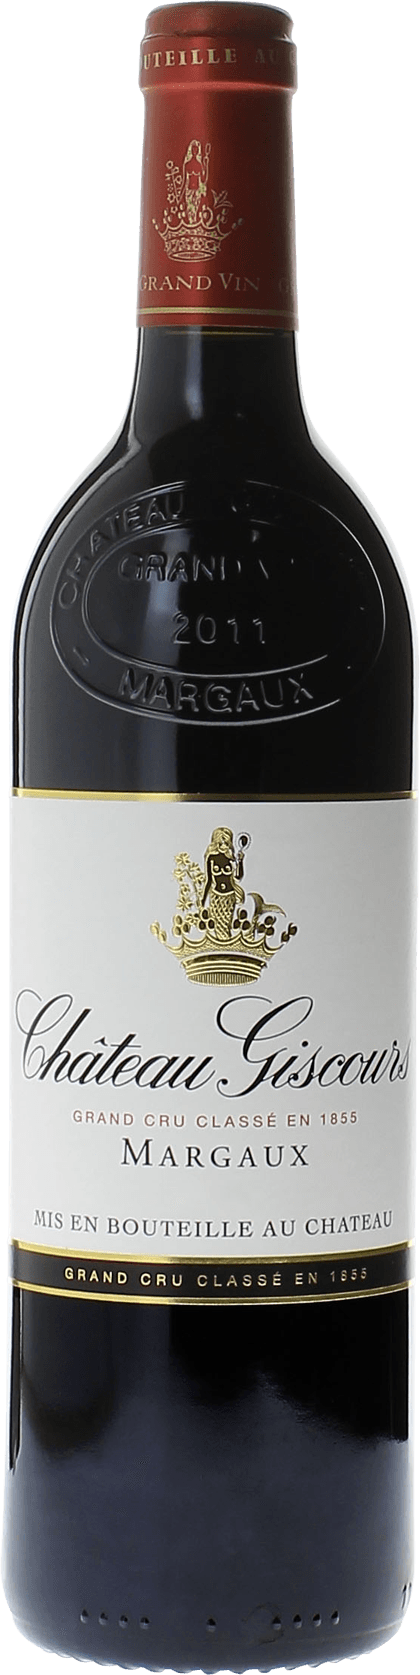 Giscours 1976 3me Grand cru class Margaux, Bordeaux rouge